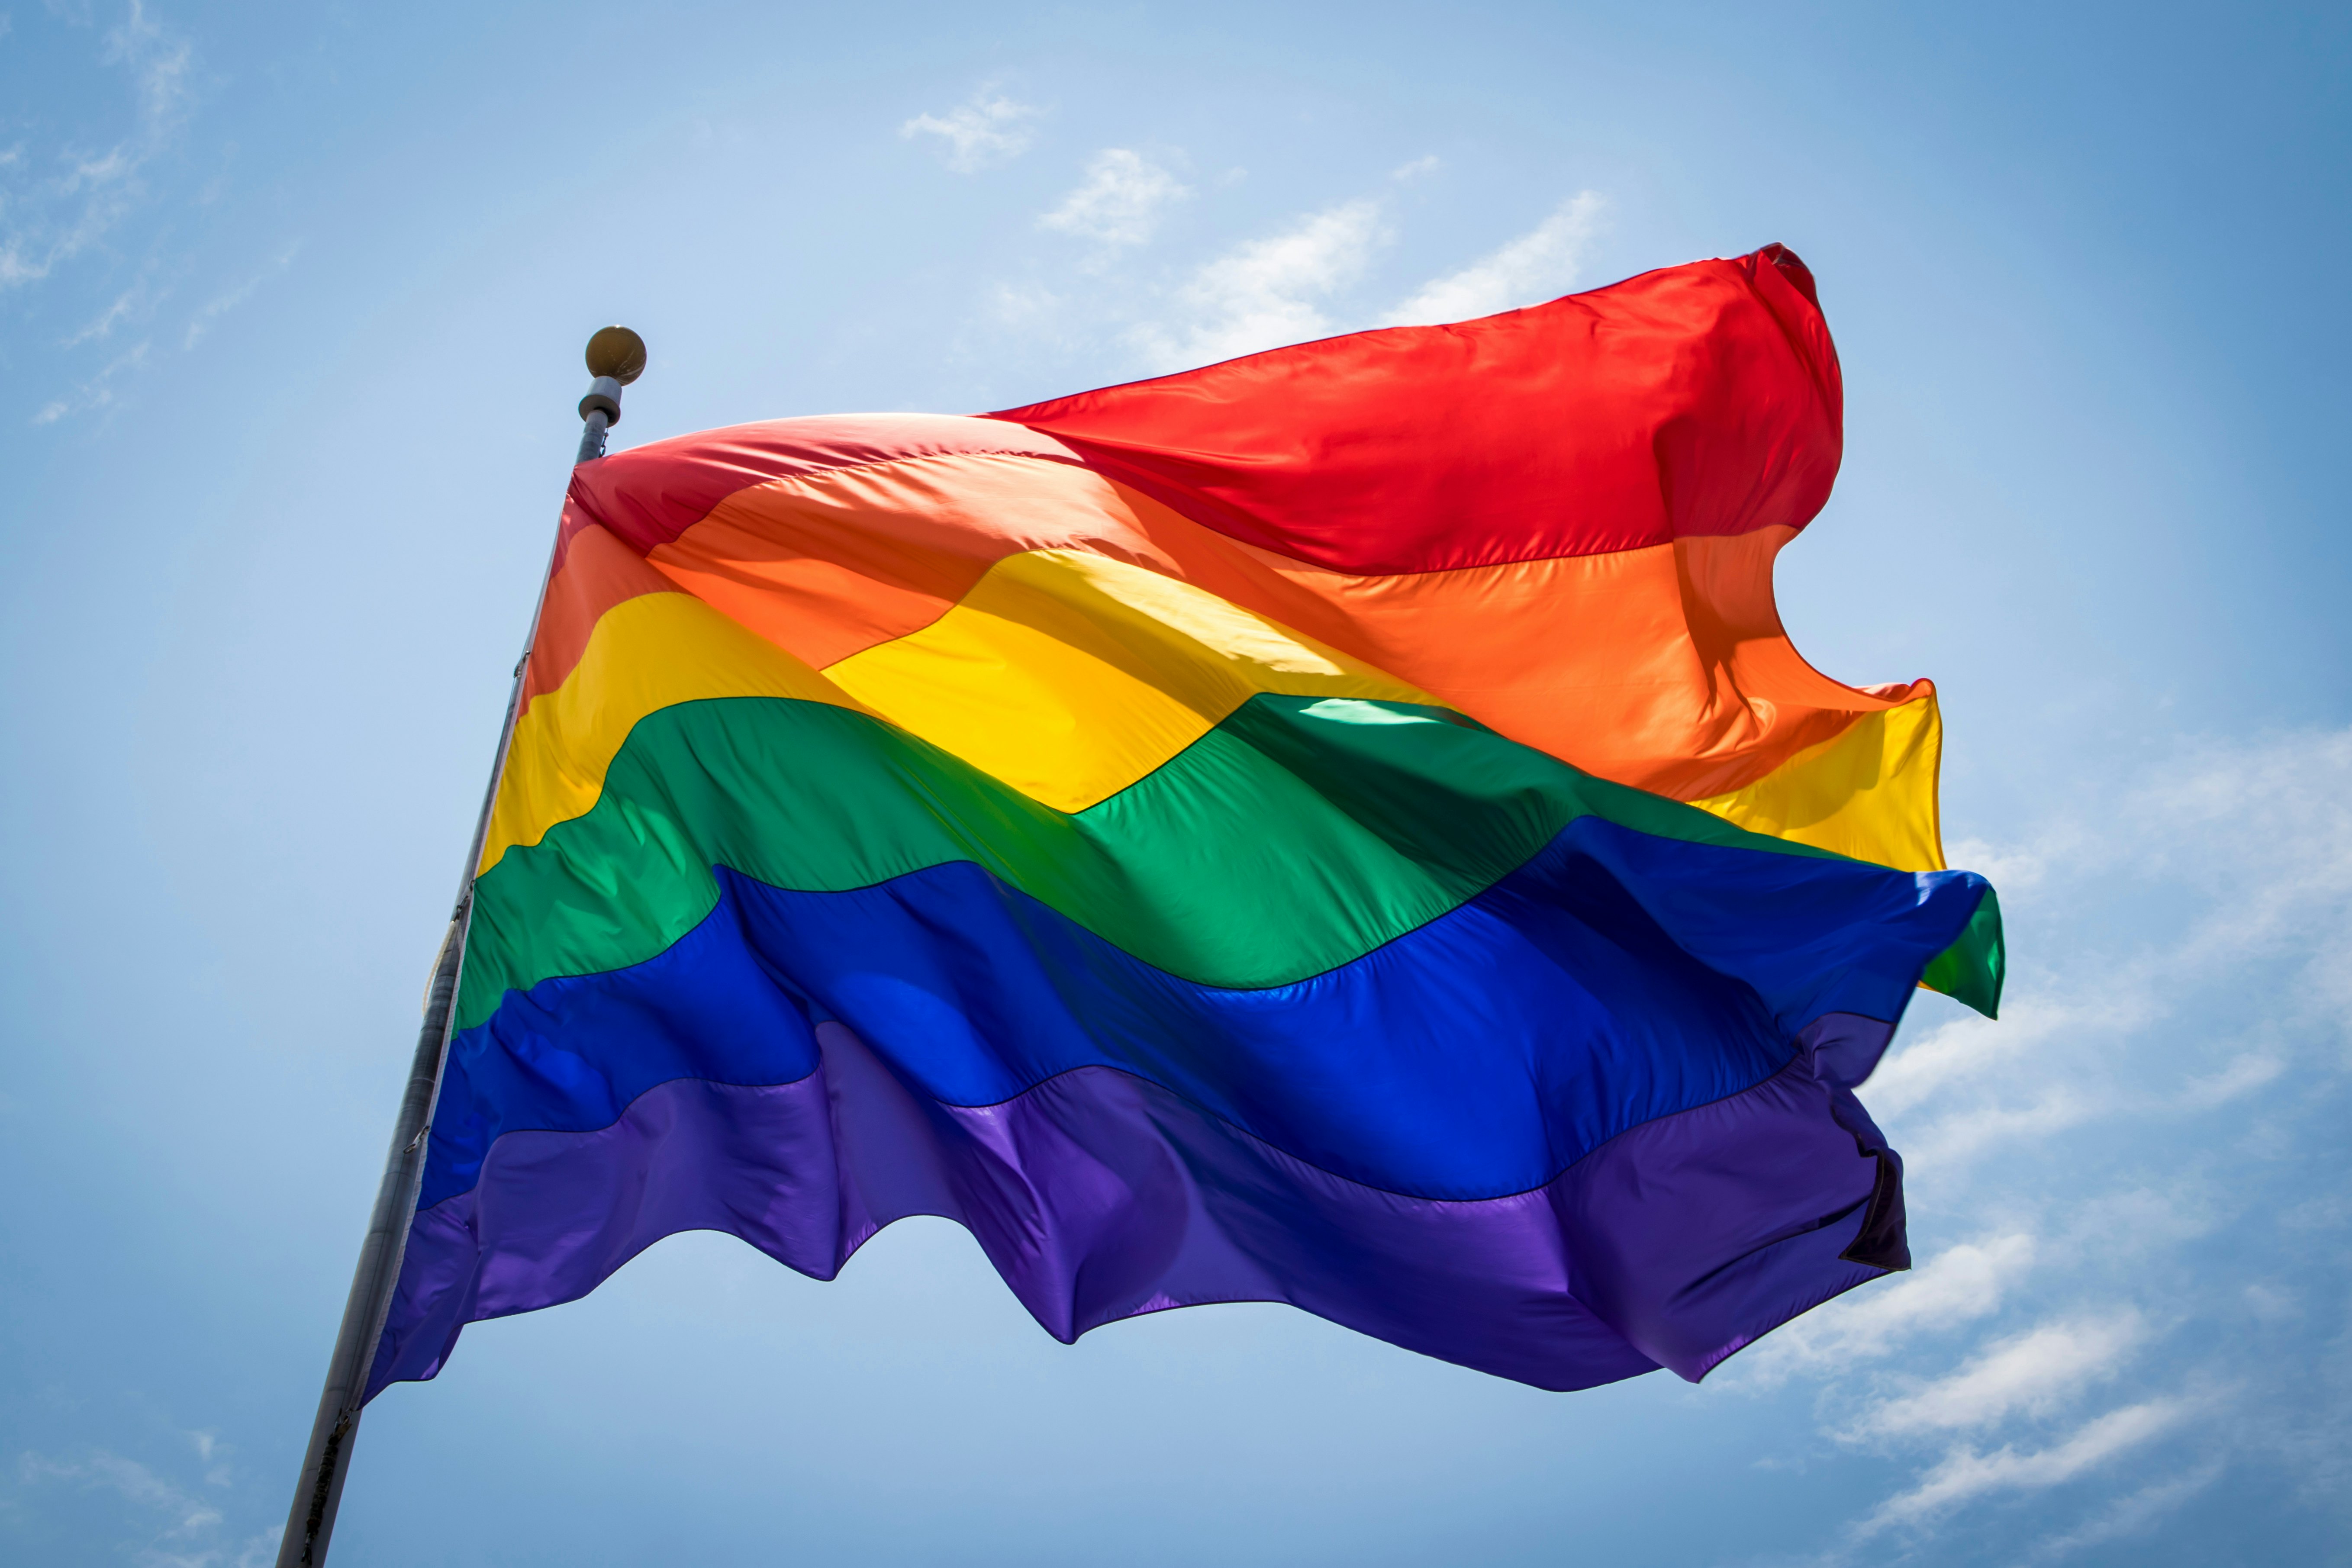 colors in gay pride flag